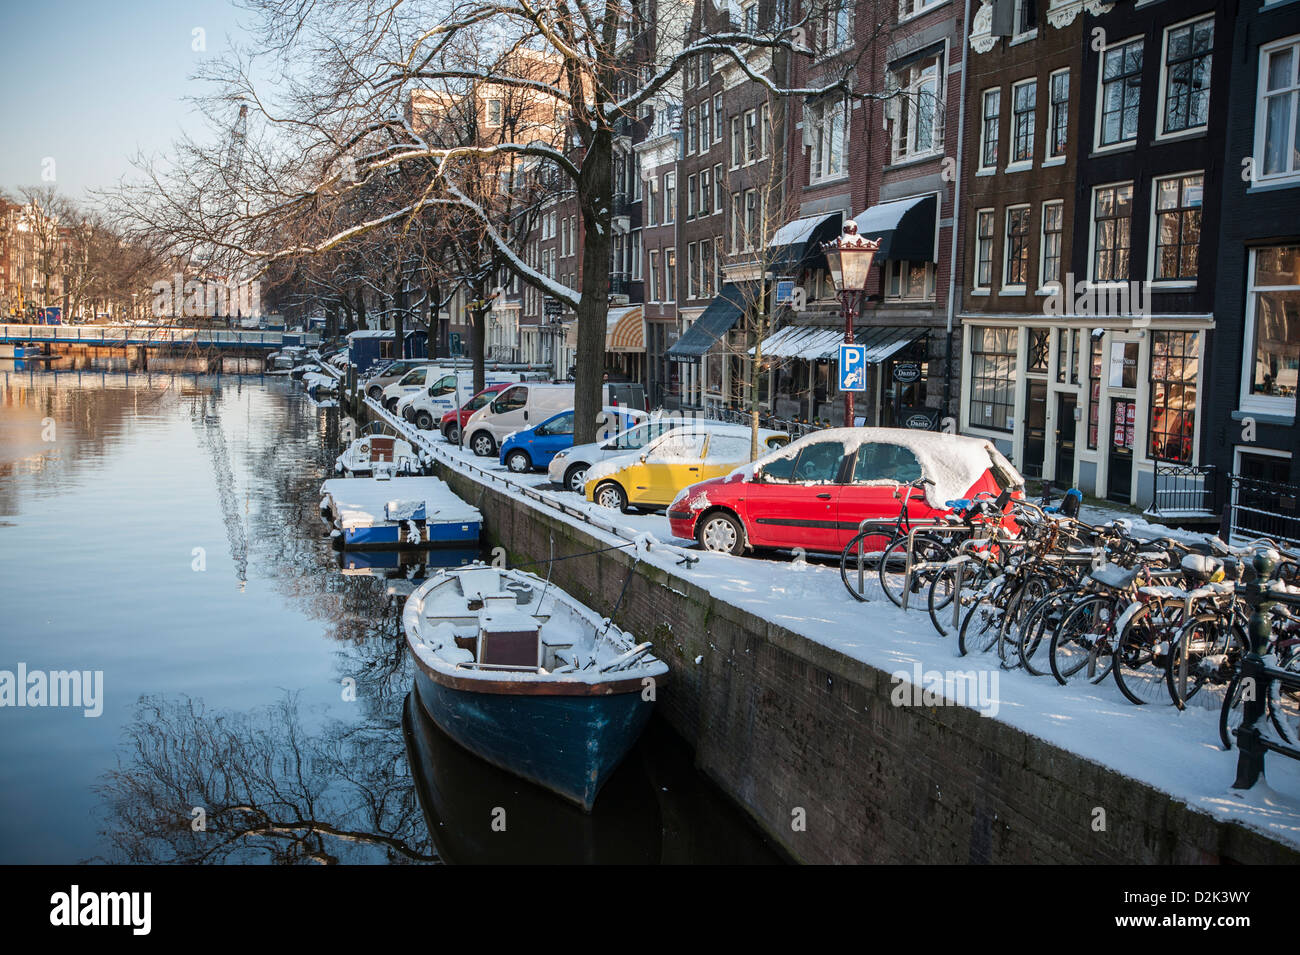 Netherlands, Amsterdam, de Jordaan Singel gracht. in winterlight. Cars in Mondriaan colors. Photo Kees Metselaar Stock Photo